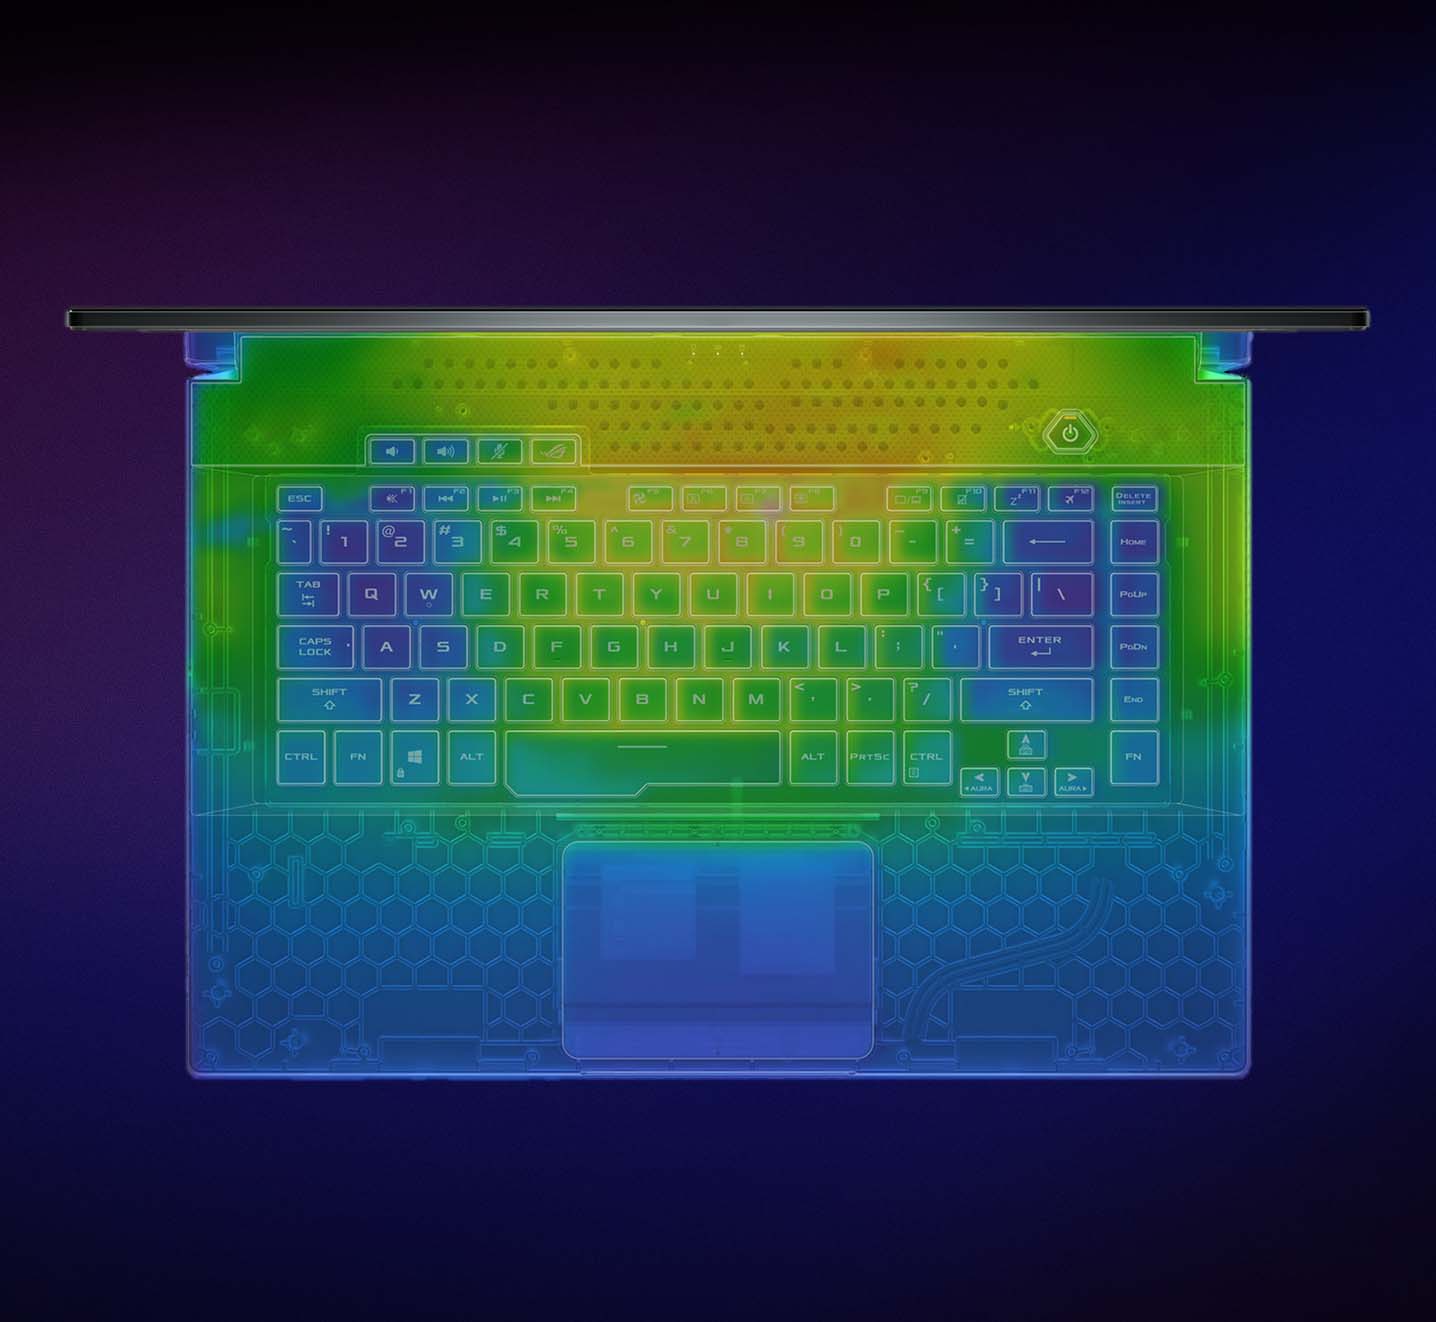 Strix G17 klavyesinin ısıl görüntüsü.